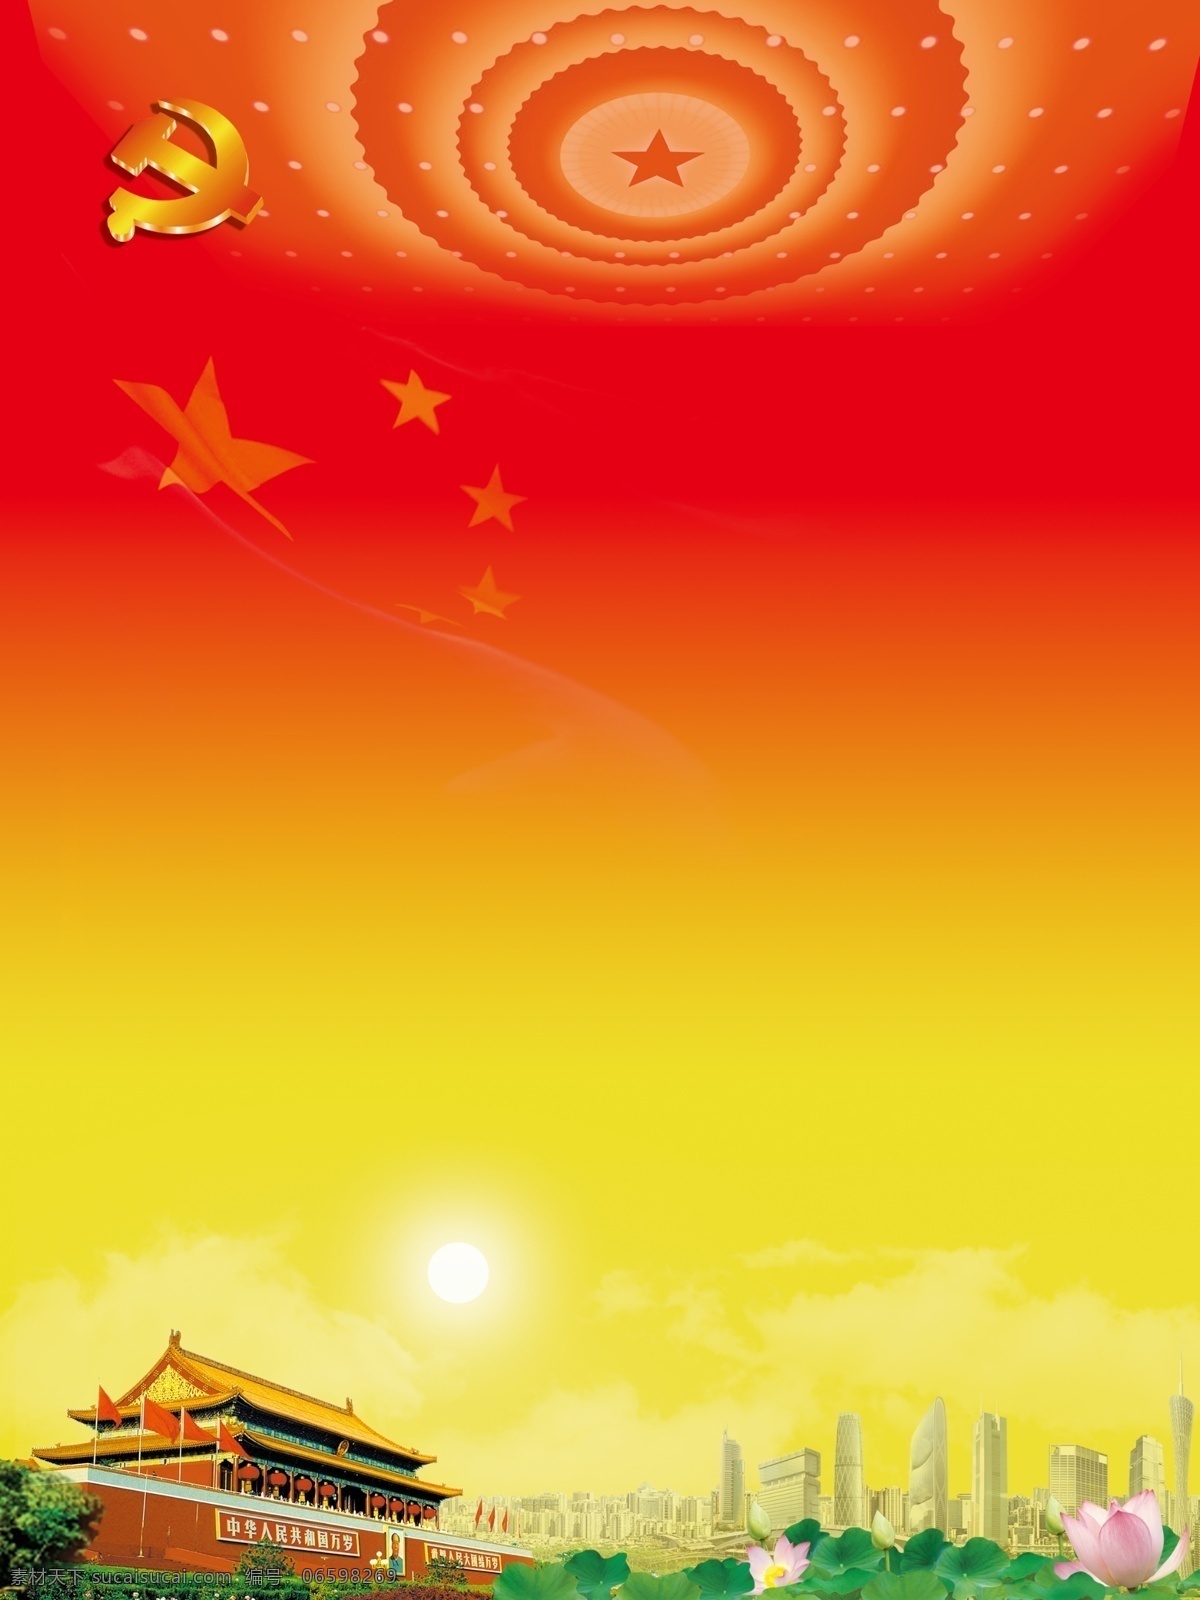 天安门 大会堂 太阳 荷花 高楼 城市 云 五角星 星光 分层 喷绘写真 展板模板 广告设计模板 源文件